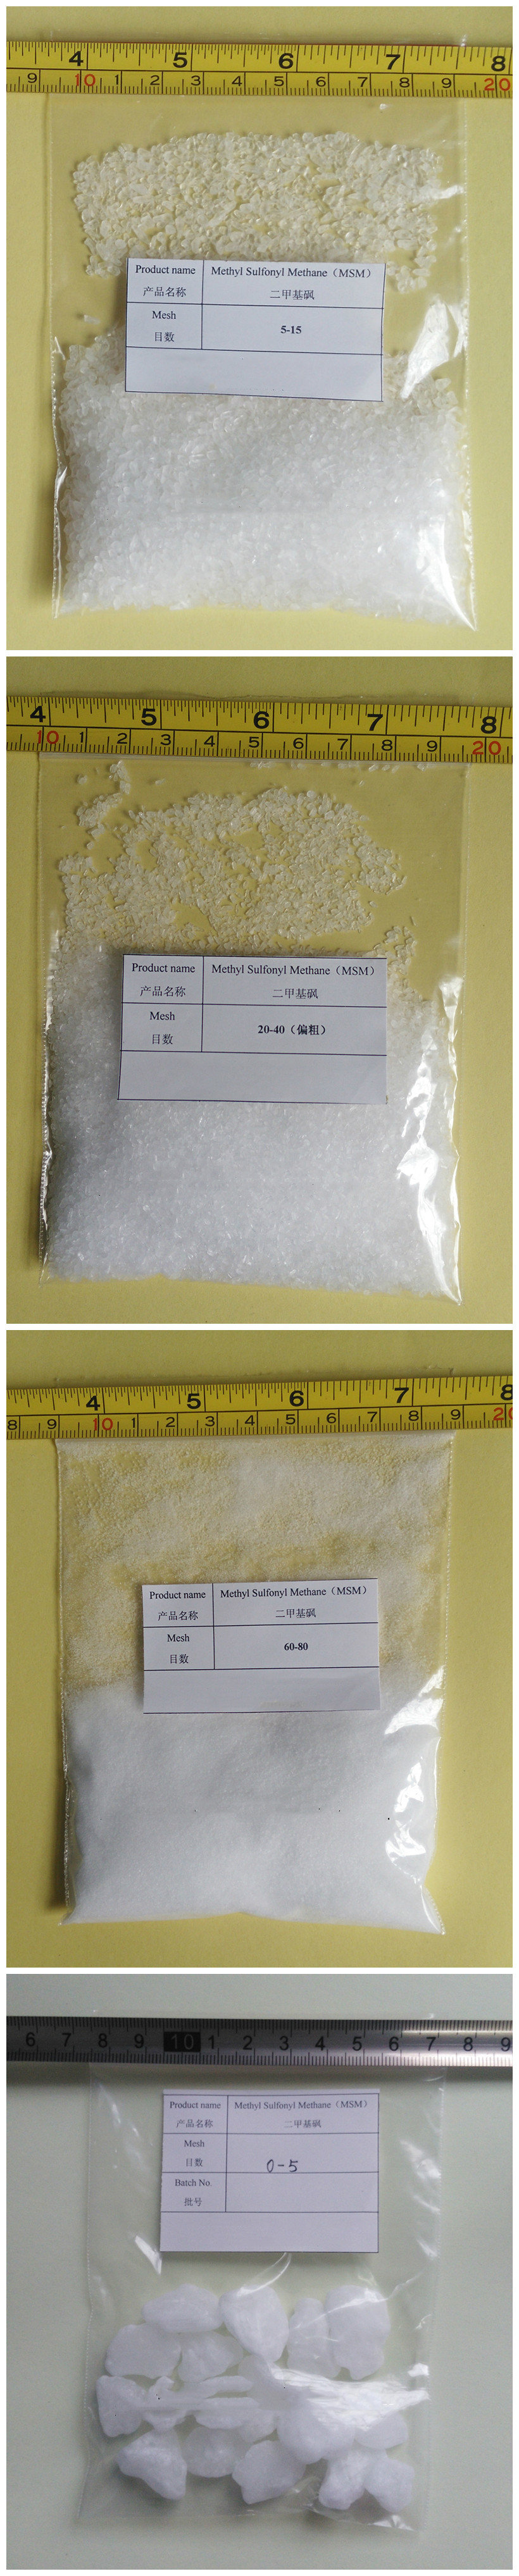 Dimethyl sulfone MSM 99% Cas 67-71-0 